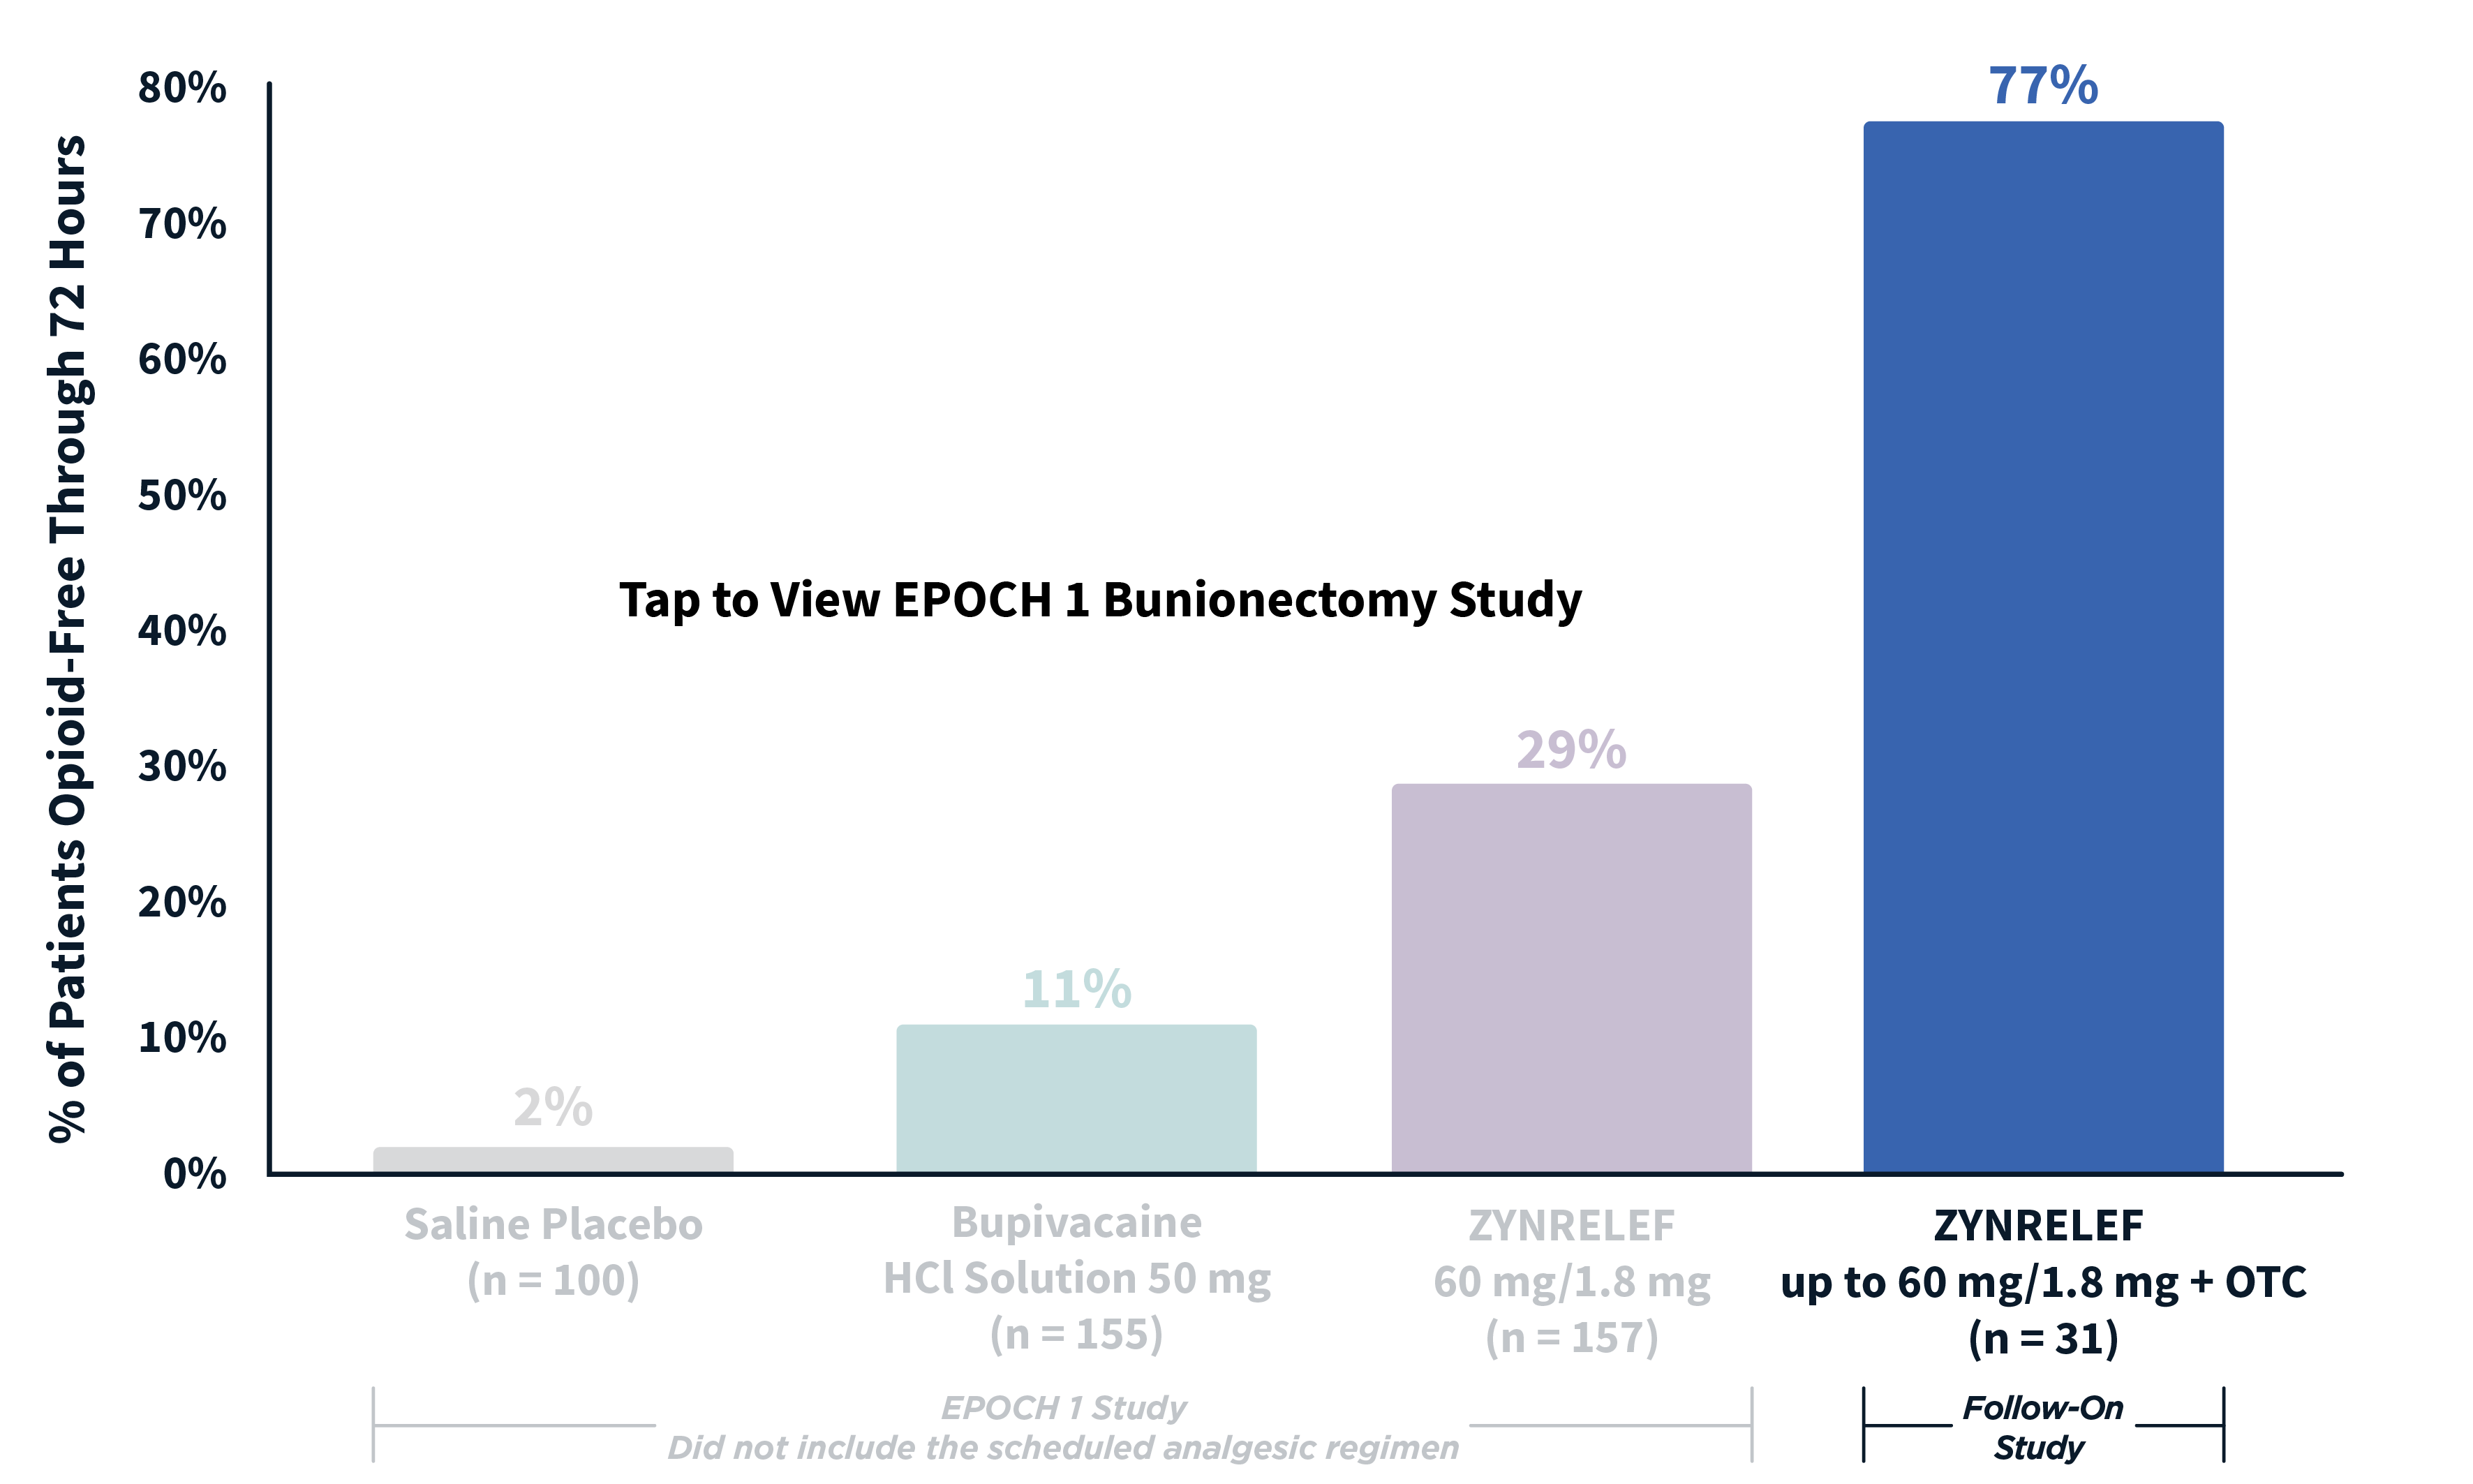 Chart: EPOCH 1 bunionectomy: 29% opioid-free through 72 hours: EPOCH 1 Follow-On: 77% opioid-free through 72 hours.